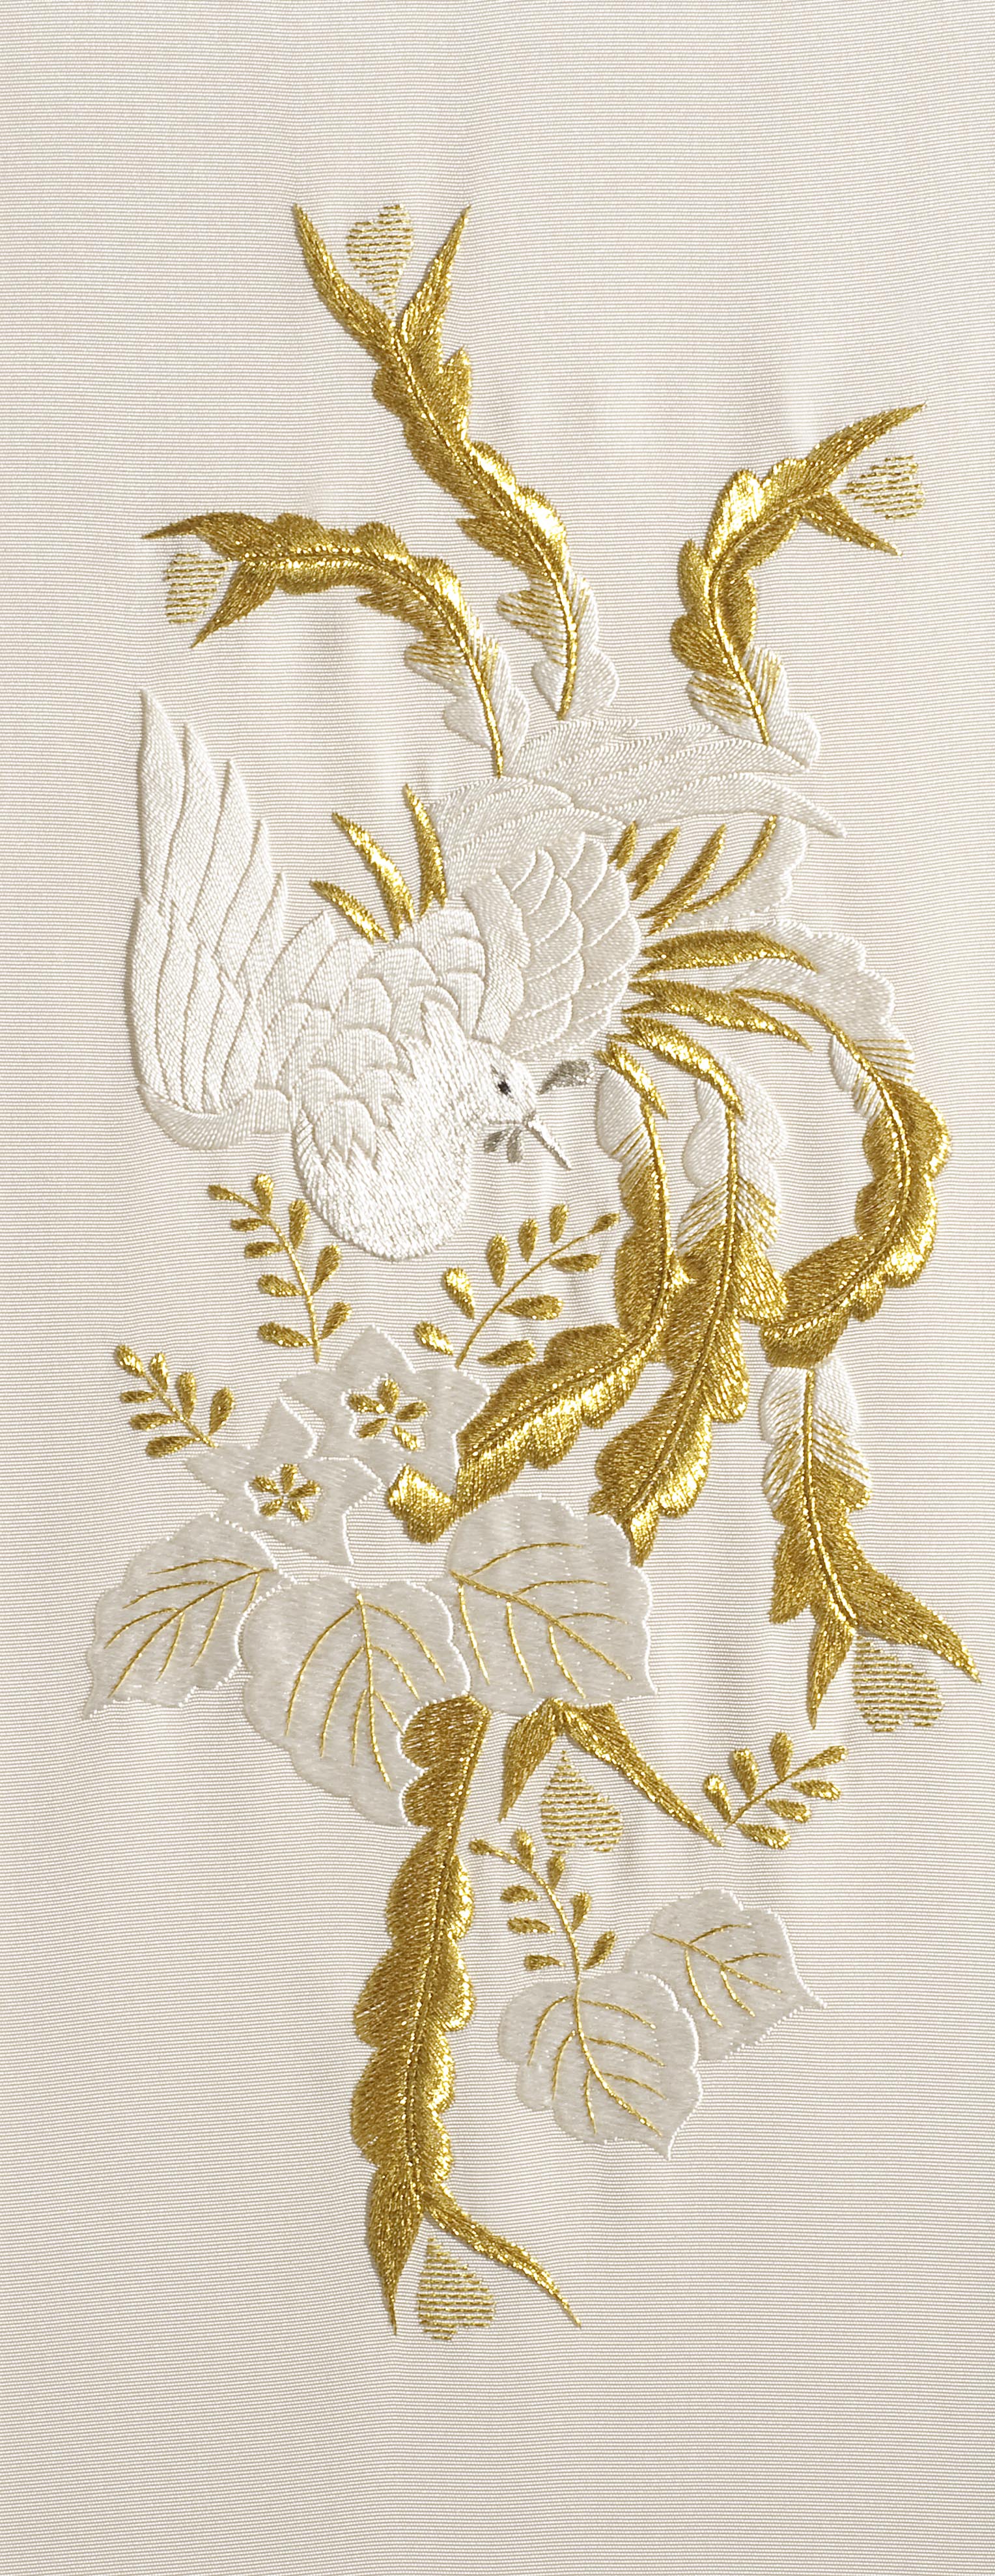 Japanese Embroidery KitsMidori Matsushima